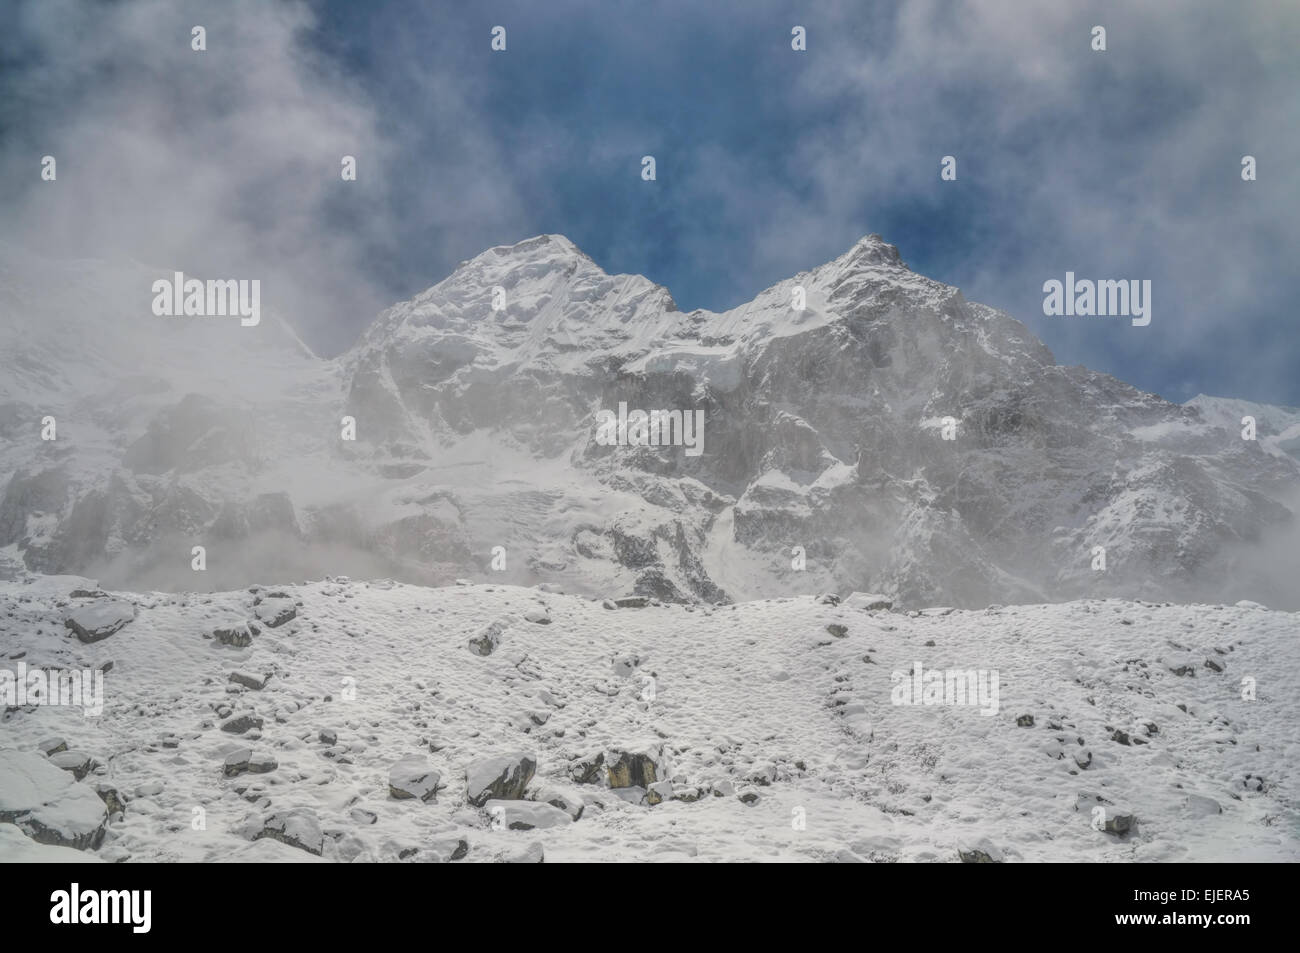 Cambiando el clima en montañas de Himalaya cerca del Kangchenjunga, la tercera montaña más alta en el mundo Foto de stock